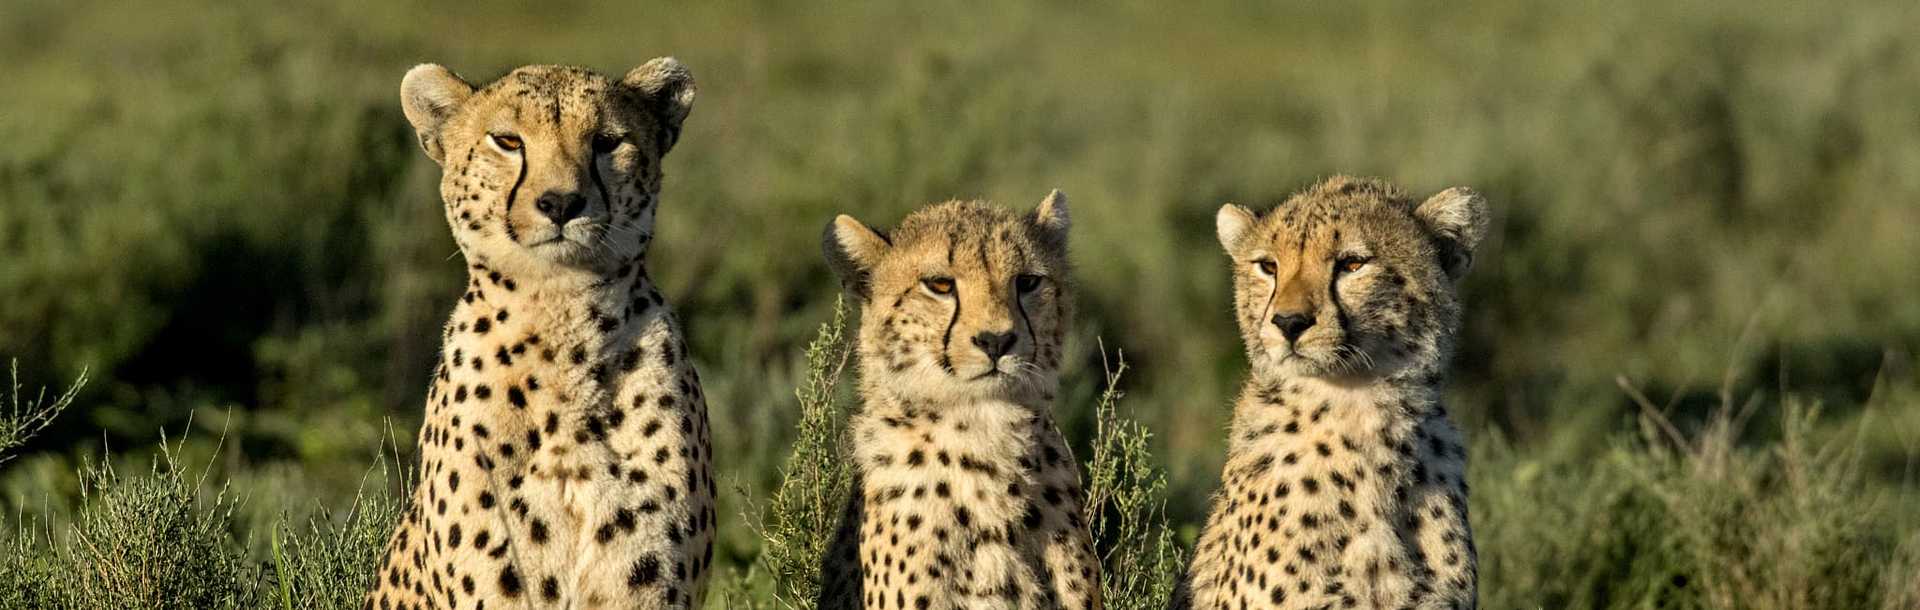 Three cheetahs sitting in the Serengeti